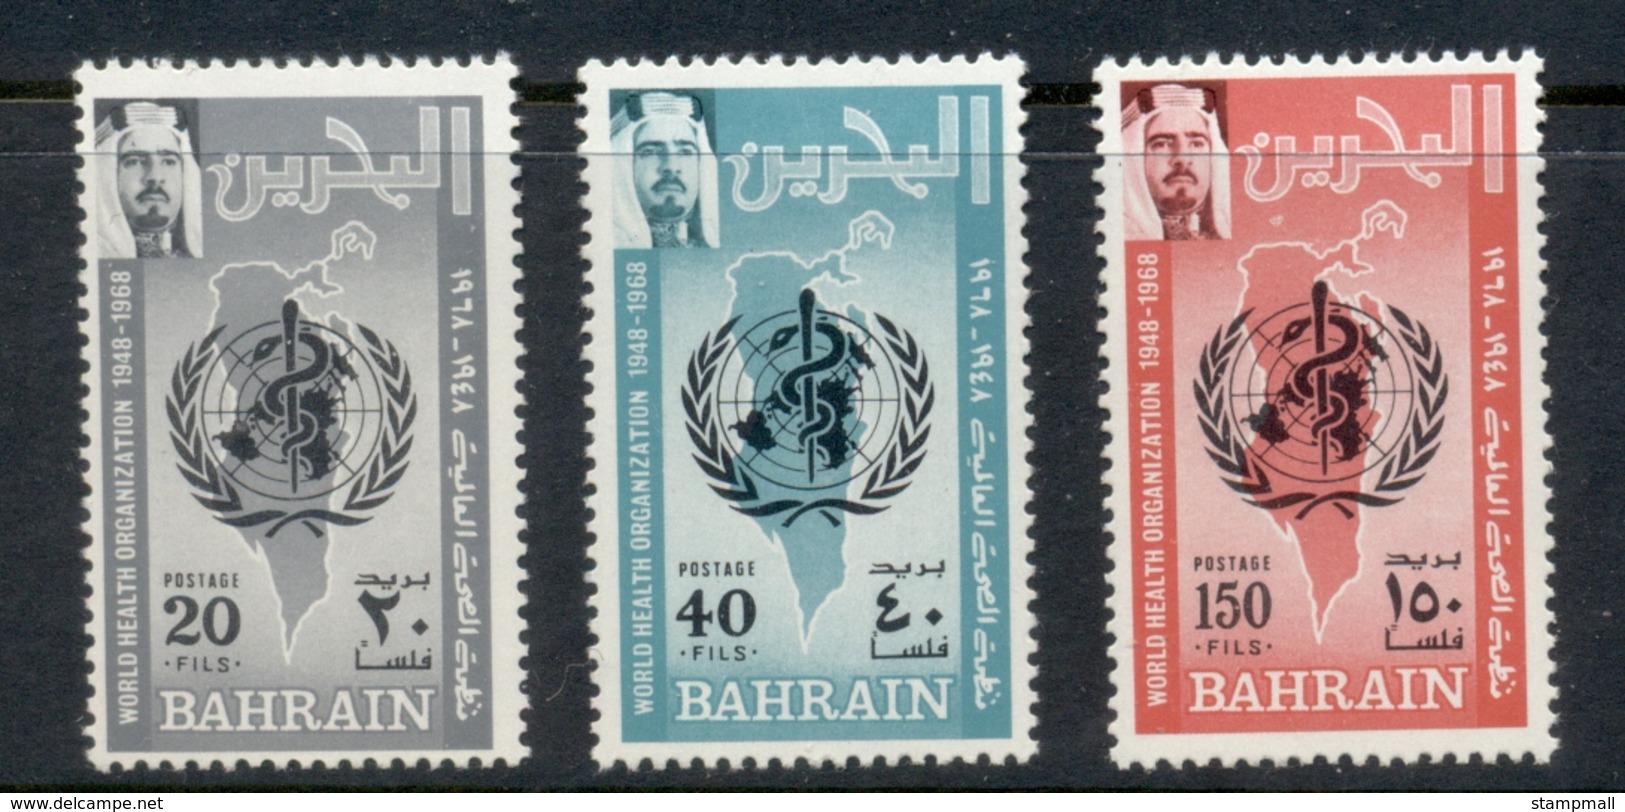 Bahrain 1968 WHO 20th Anniv. MUH - Bahrain (1965-...)